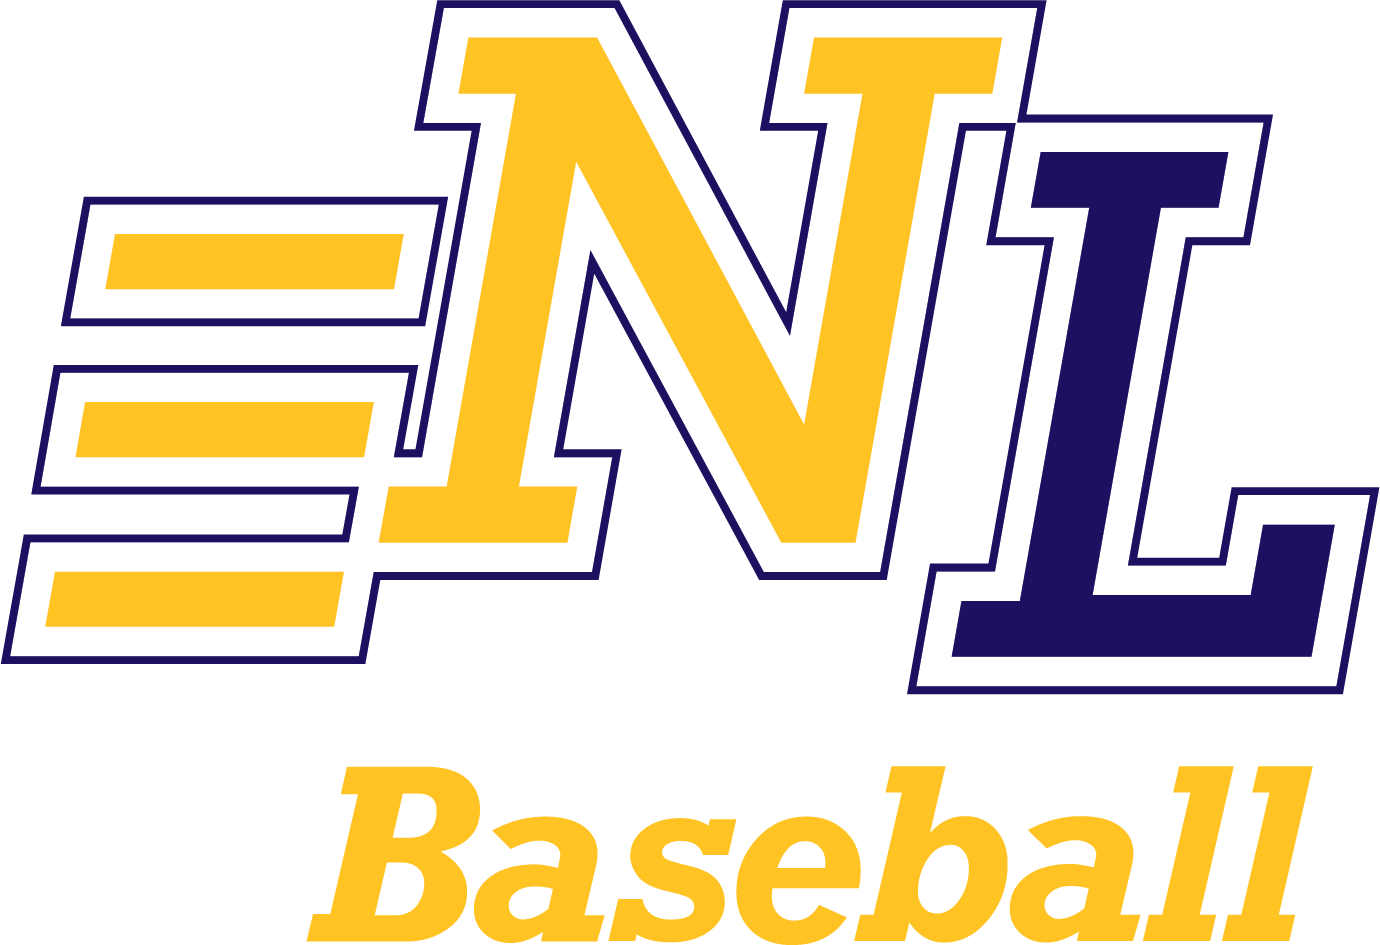 Next Level Baseball logo